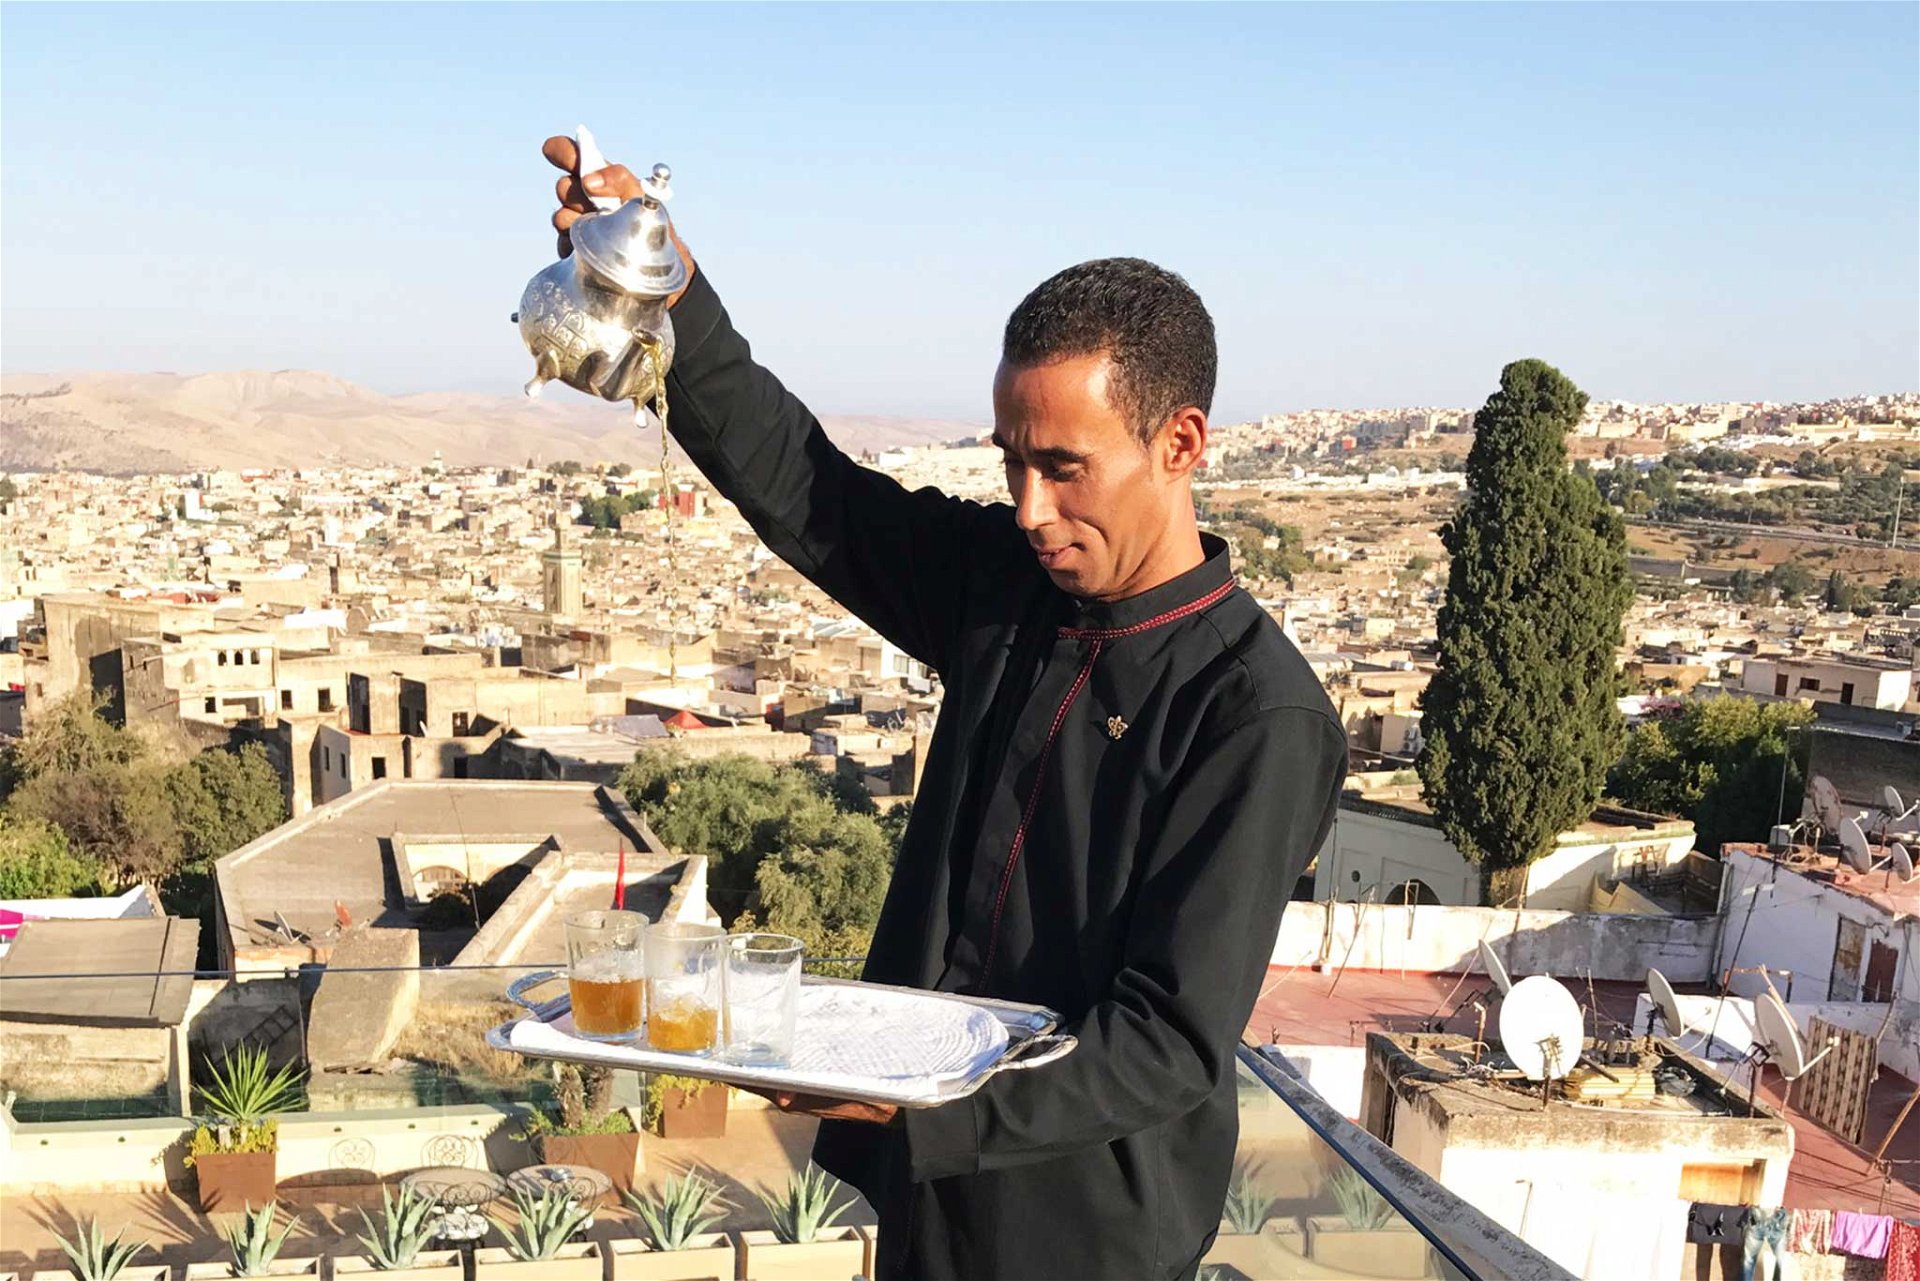 »Thé à la Menthe« gilt als marokkanisches Nationalgetränk. Schon alleine das Servieren des Minztees ist ein Erlebnis. 